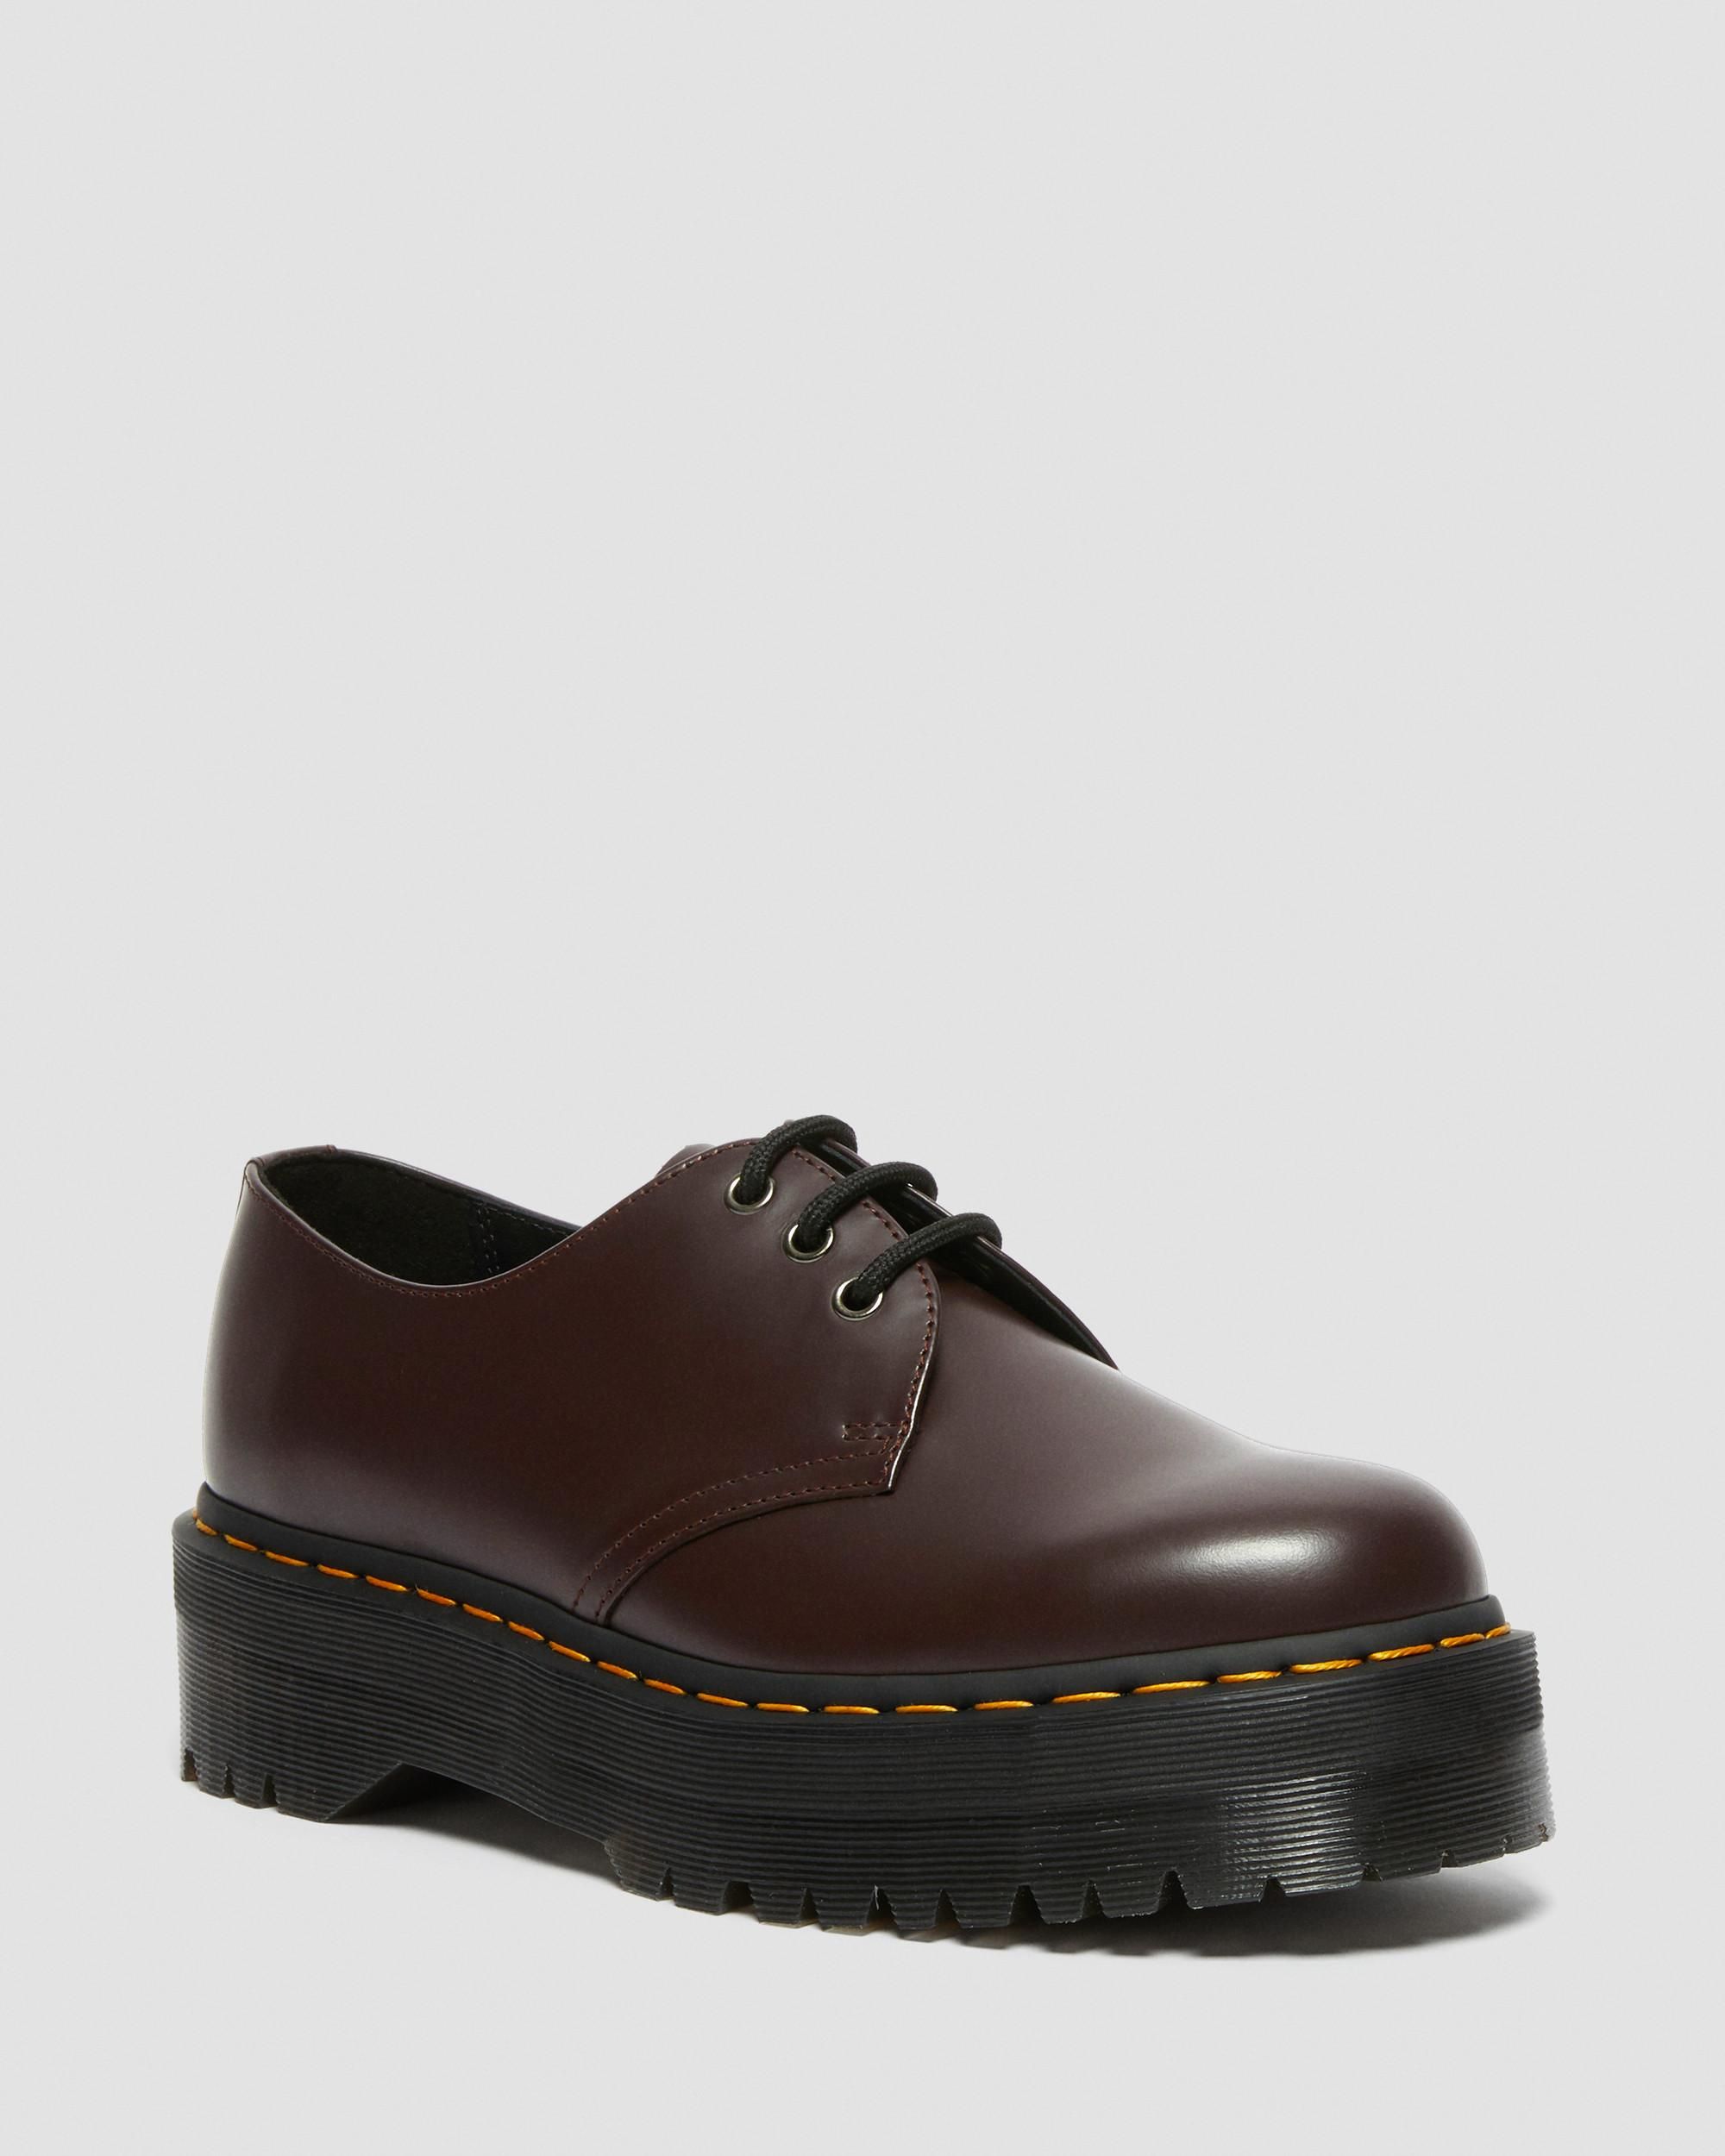 1461 Smooth Leather Platform Shoes | Dr. Martens | Dr. Martens